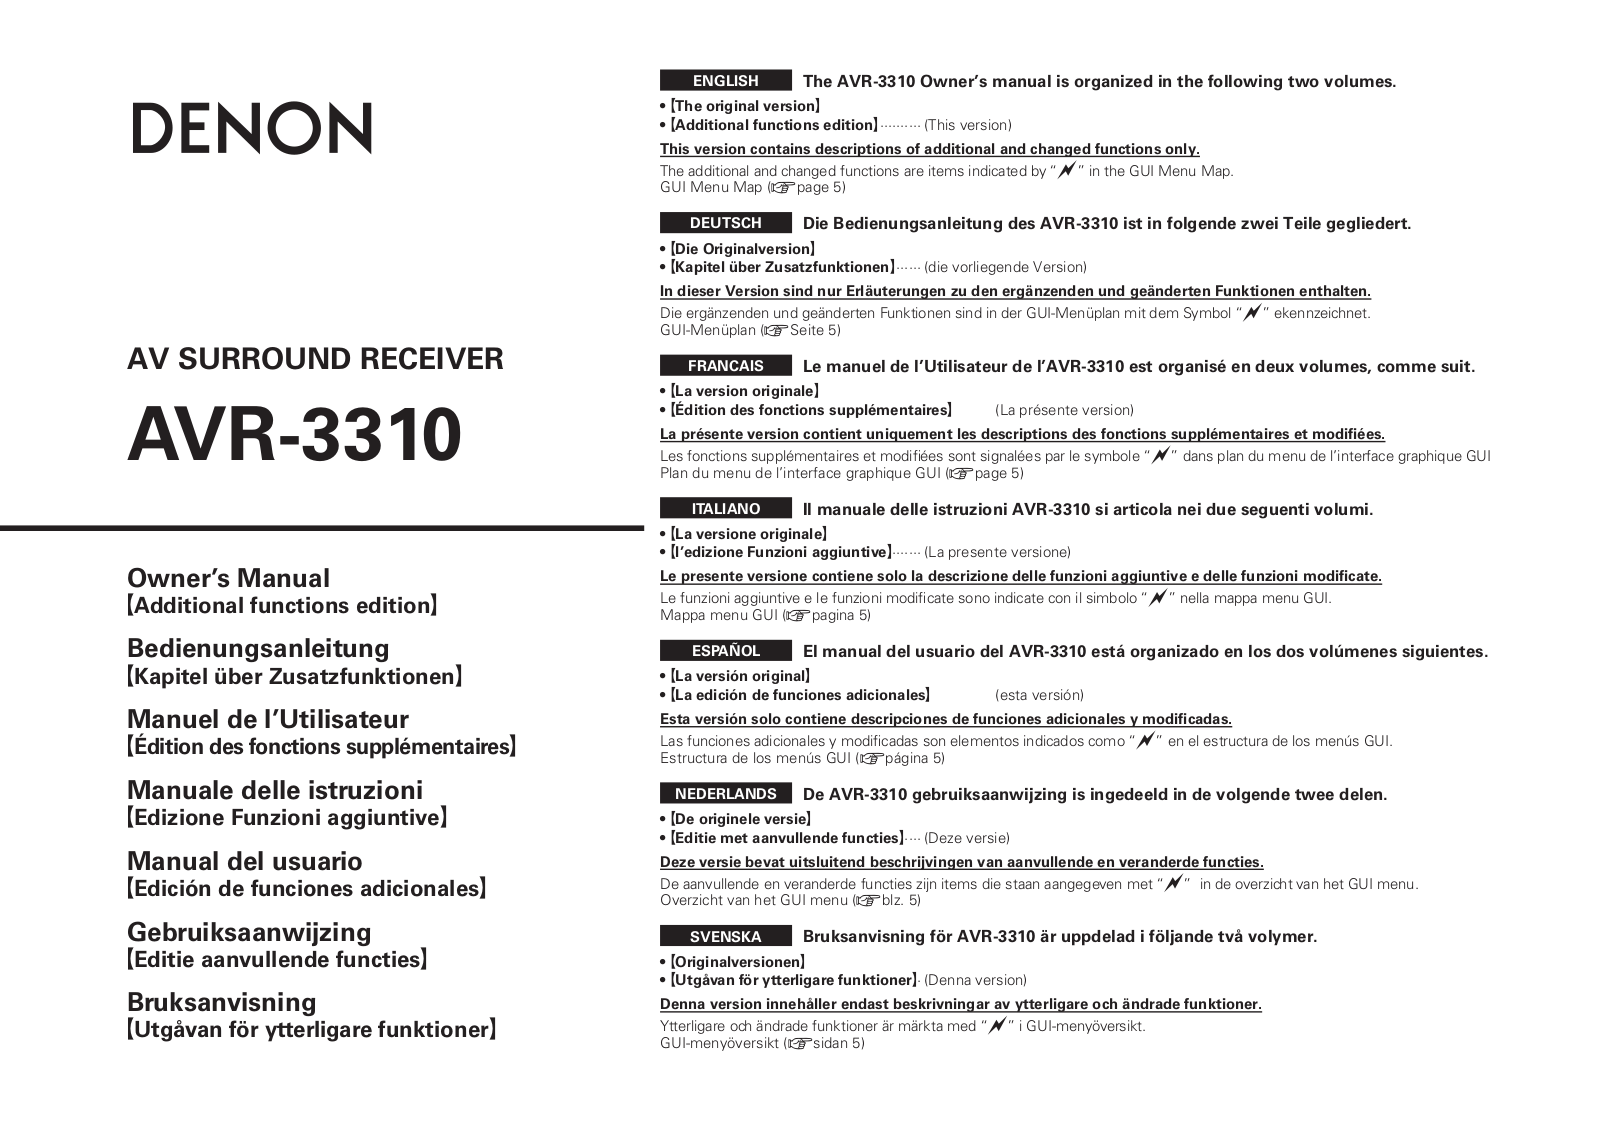 Denon AVR-UPEN3310 Owner's Manual